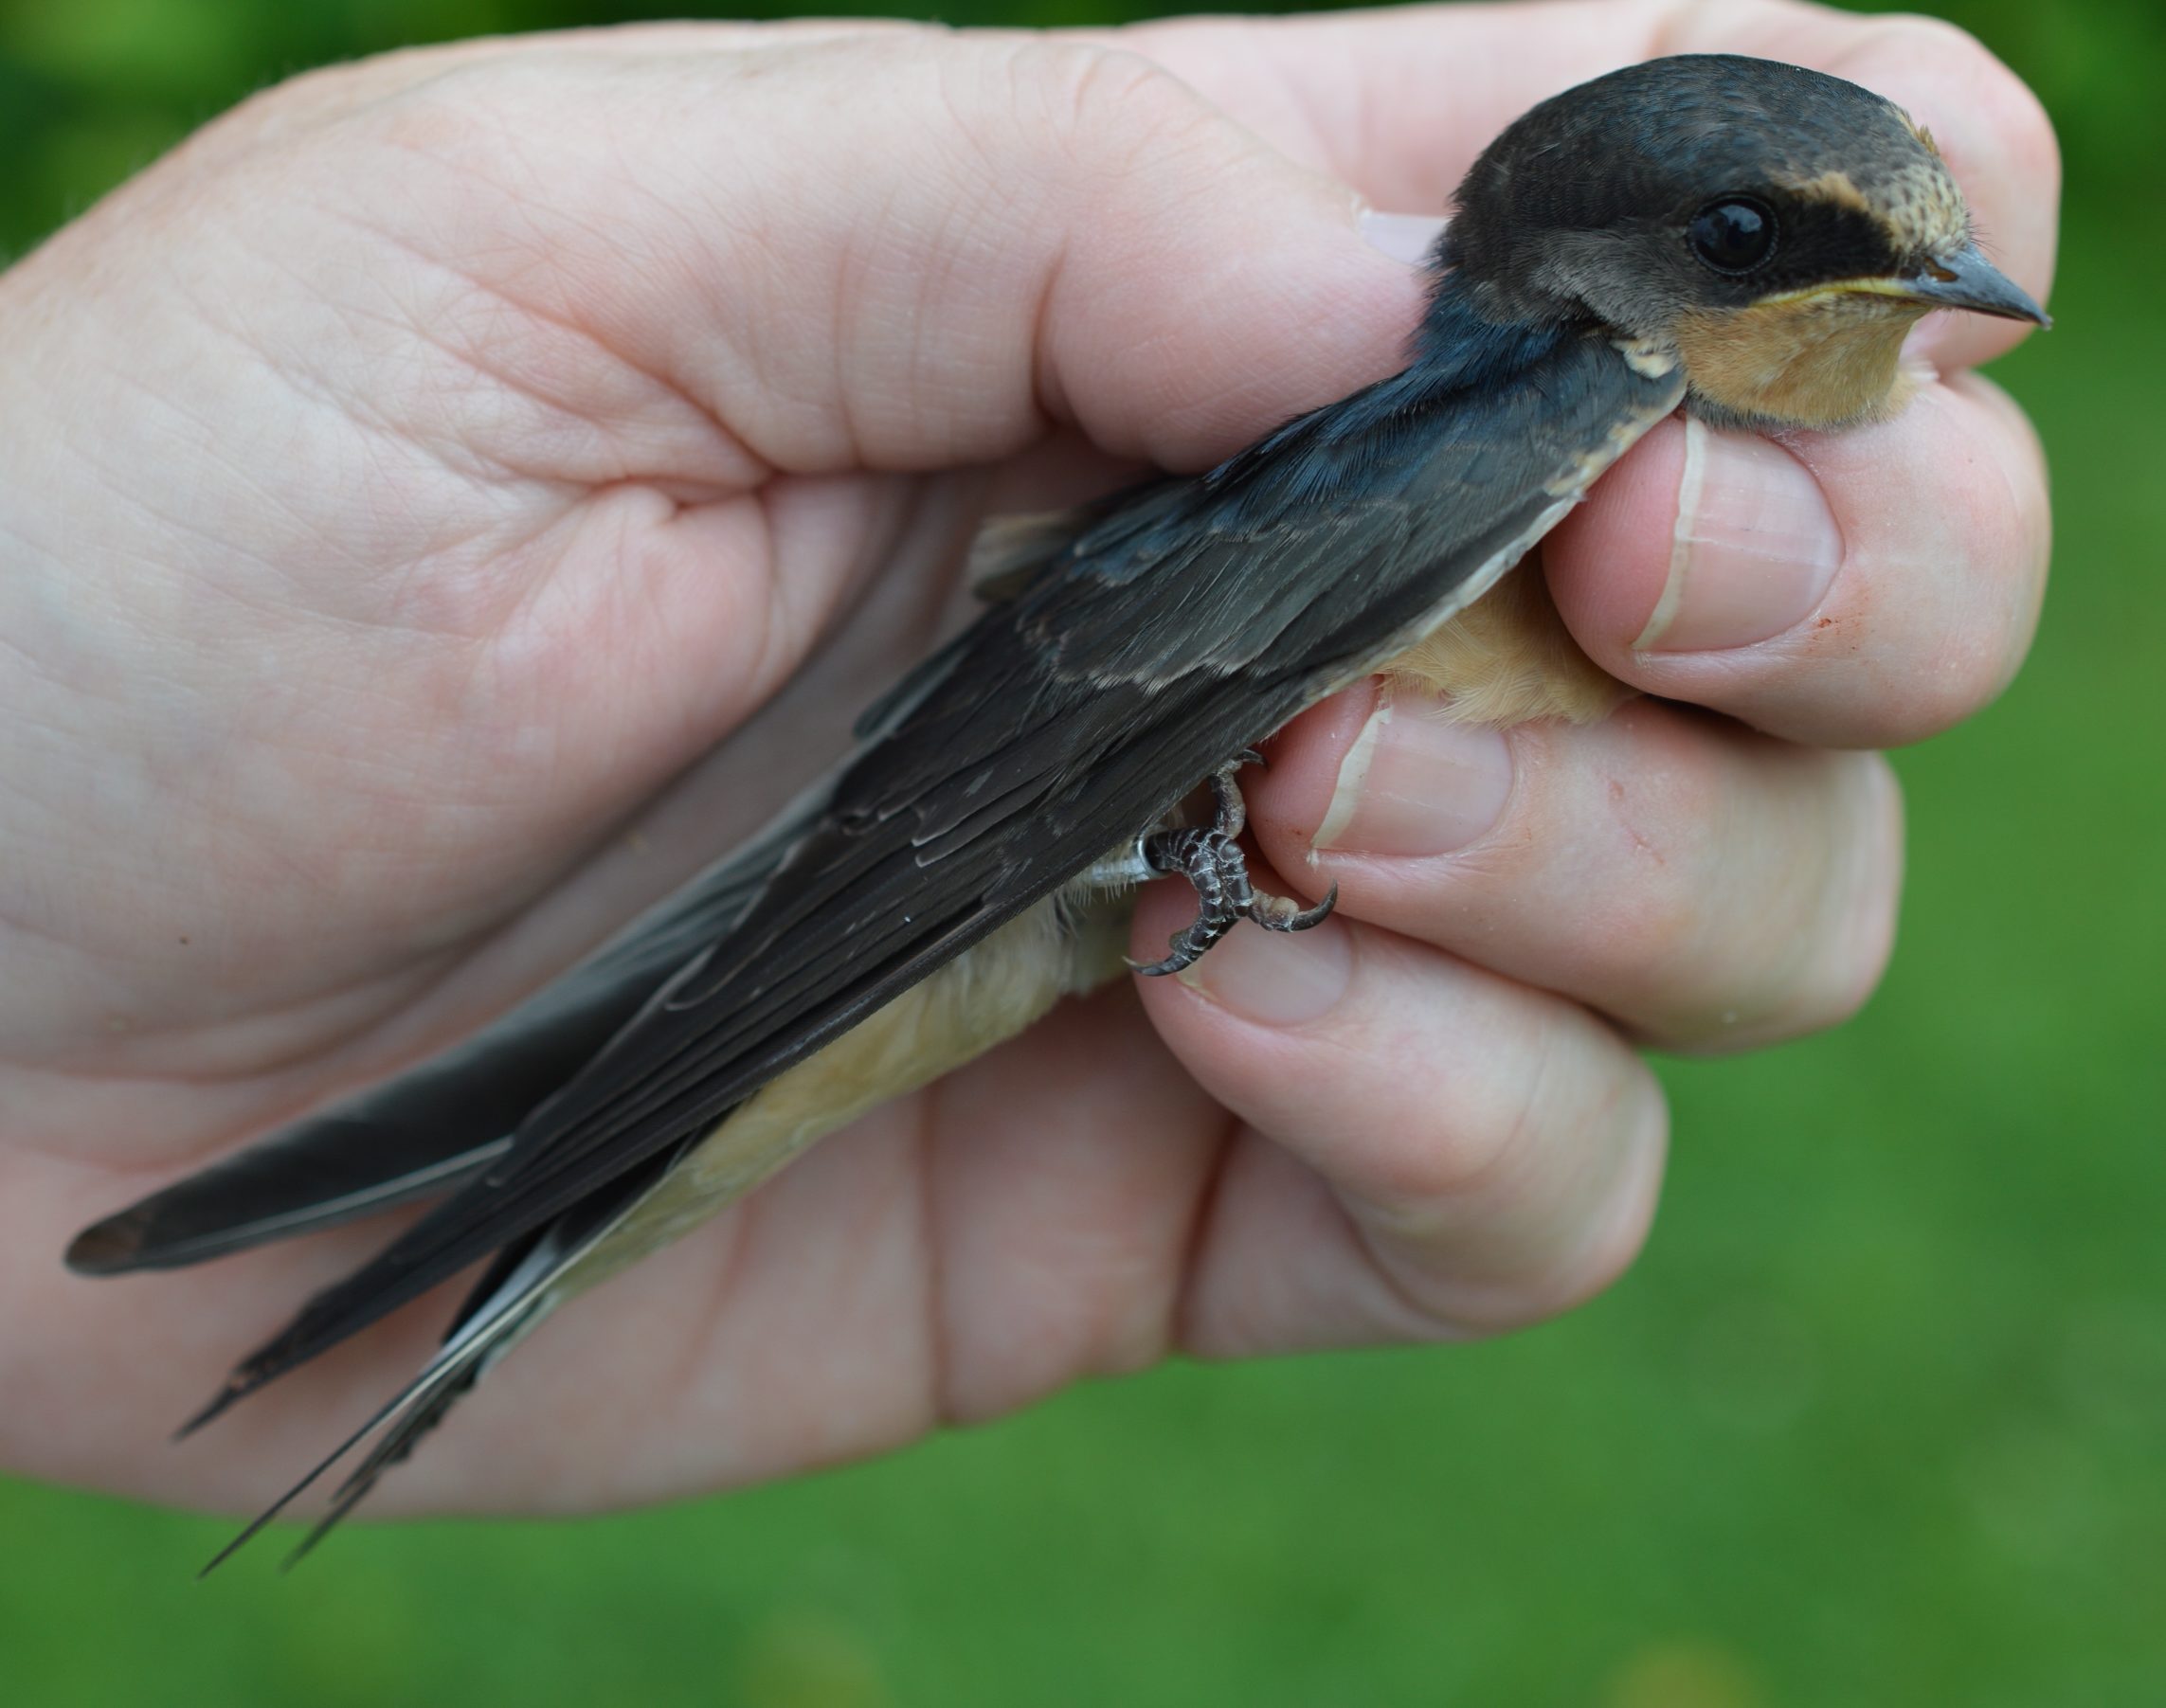 Hatch-year Barn Swallow